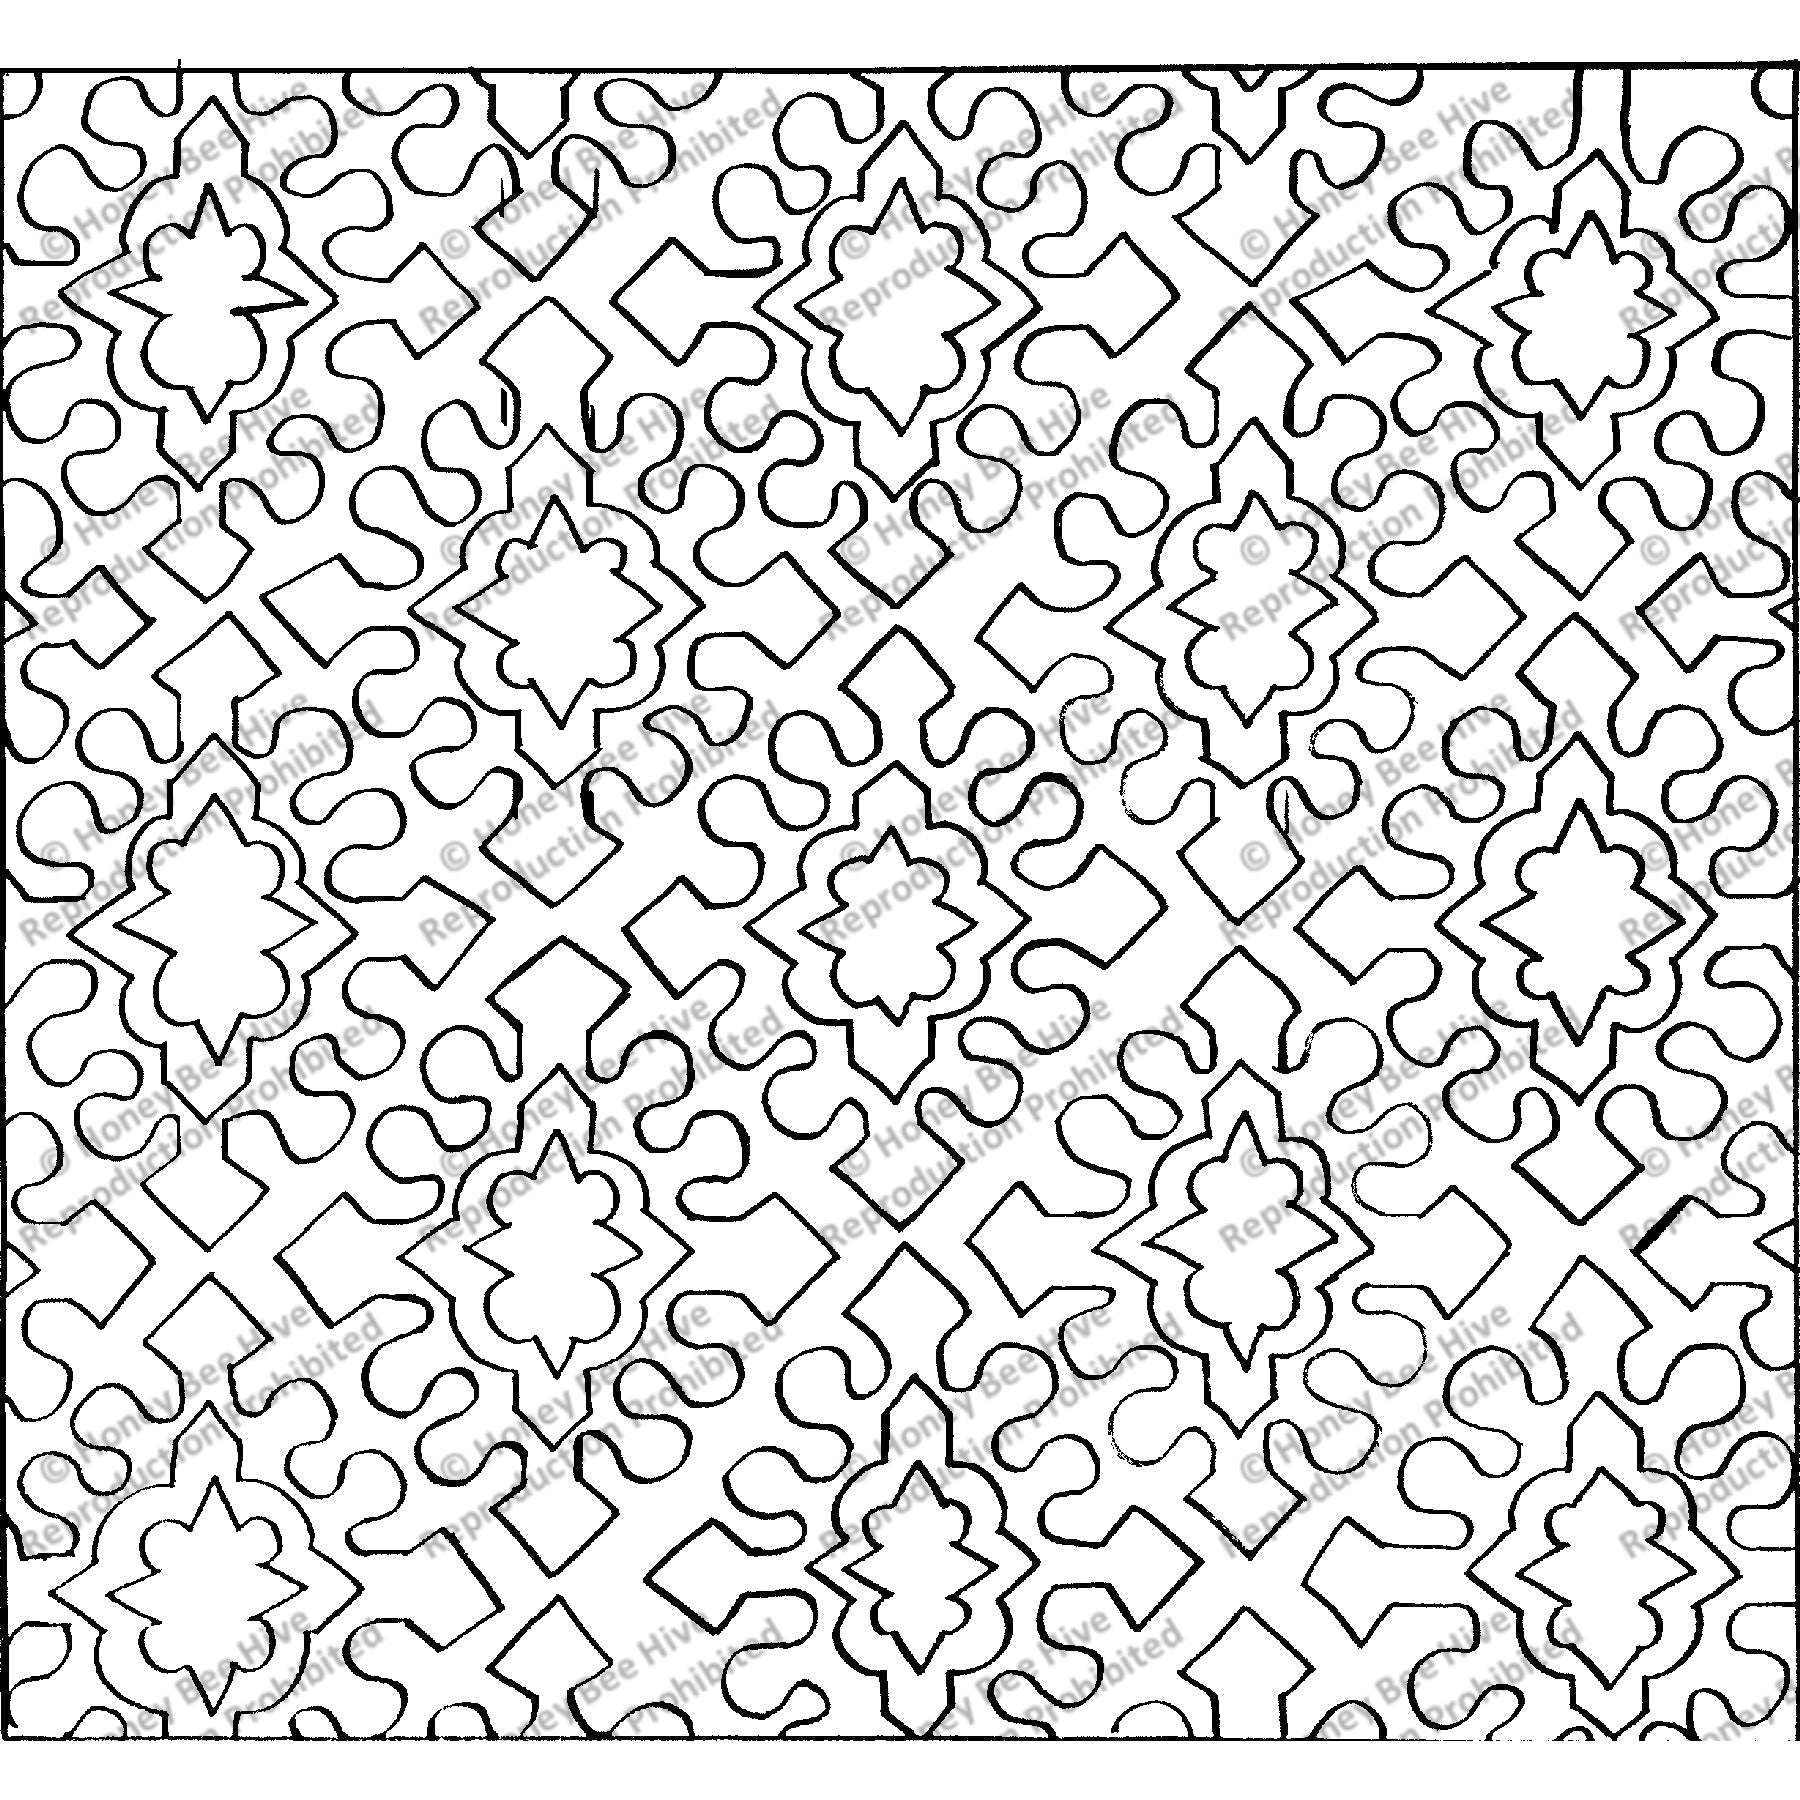 Sagacity, rug hooking pattern